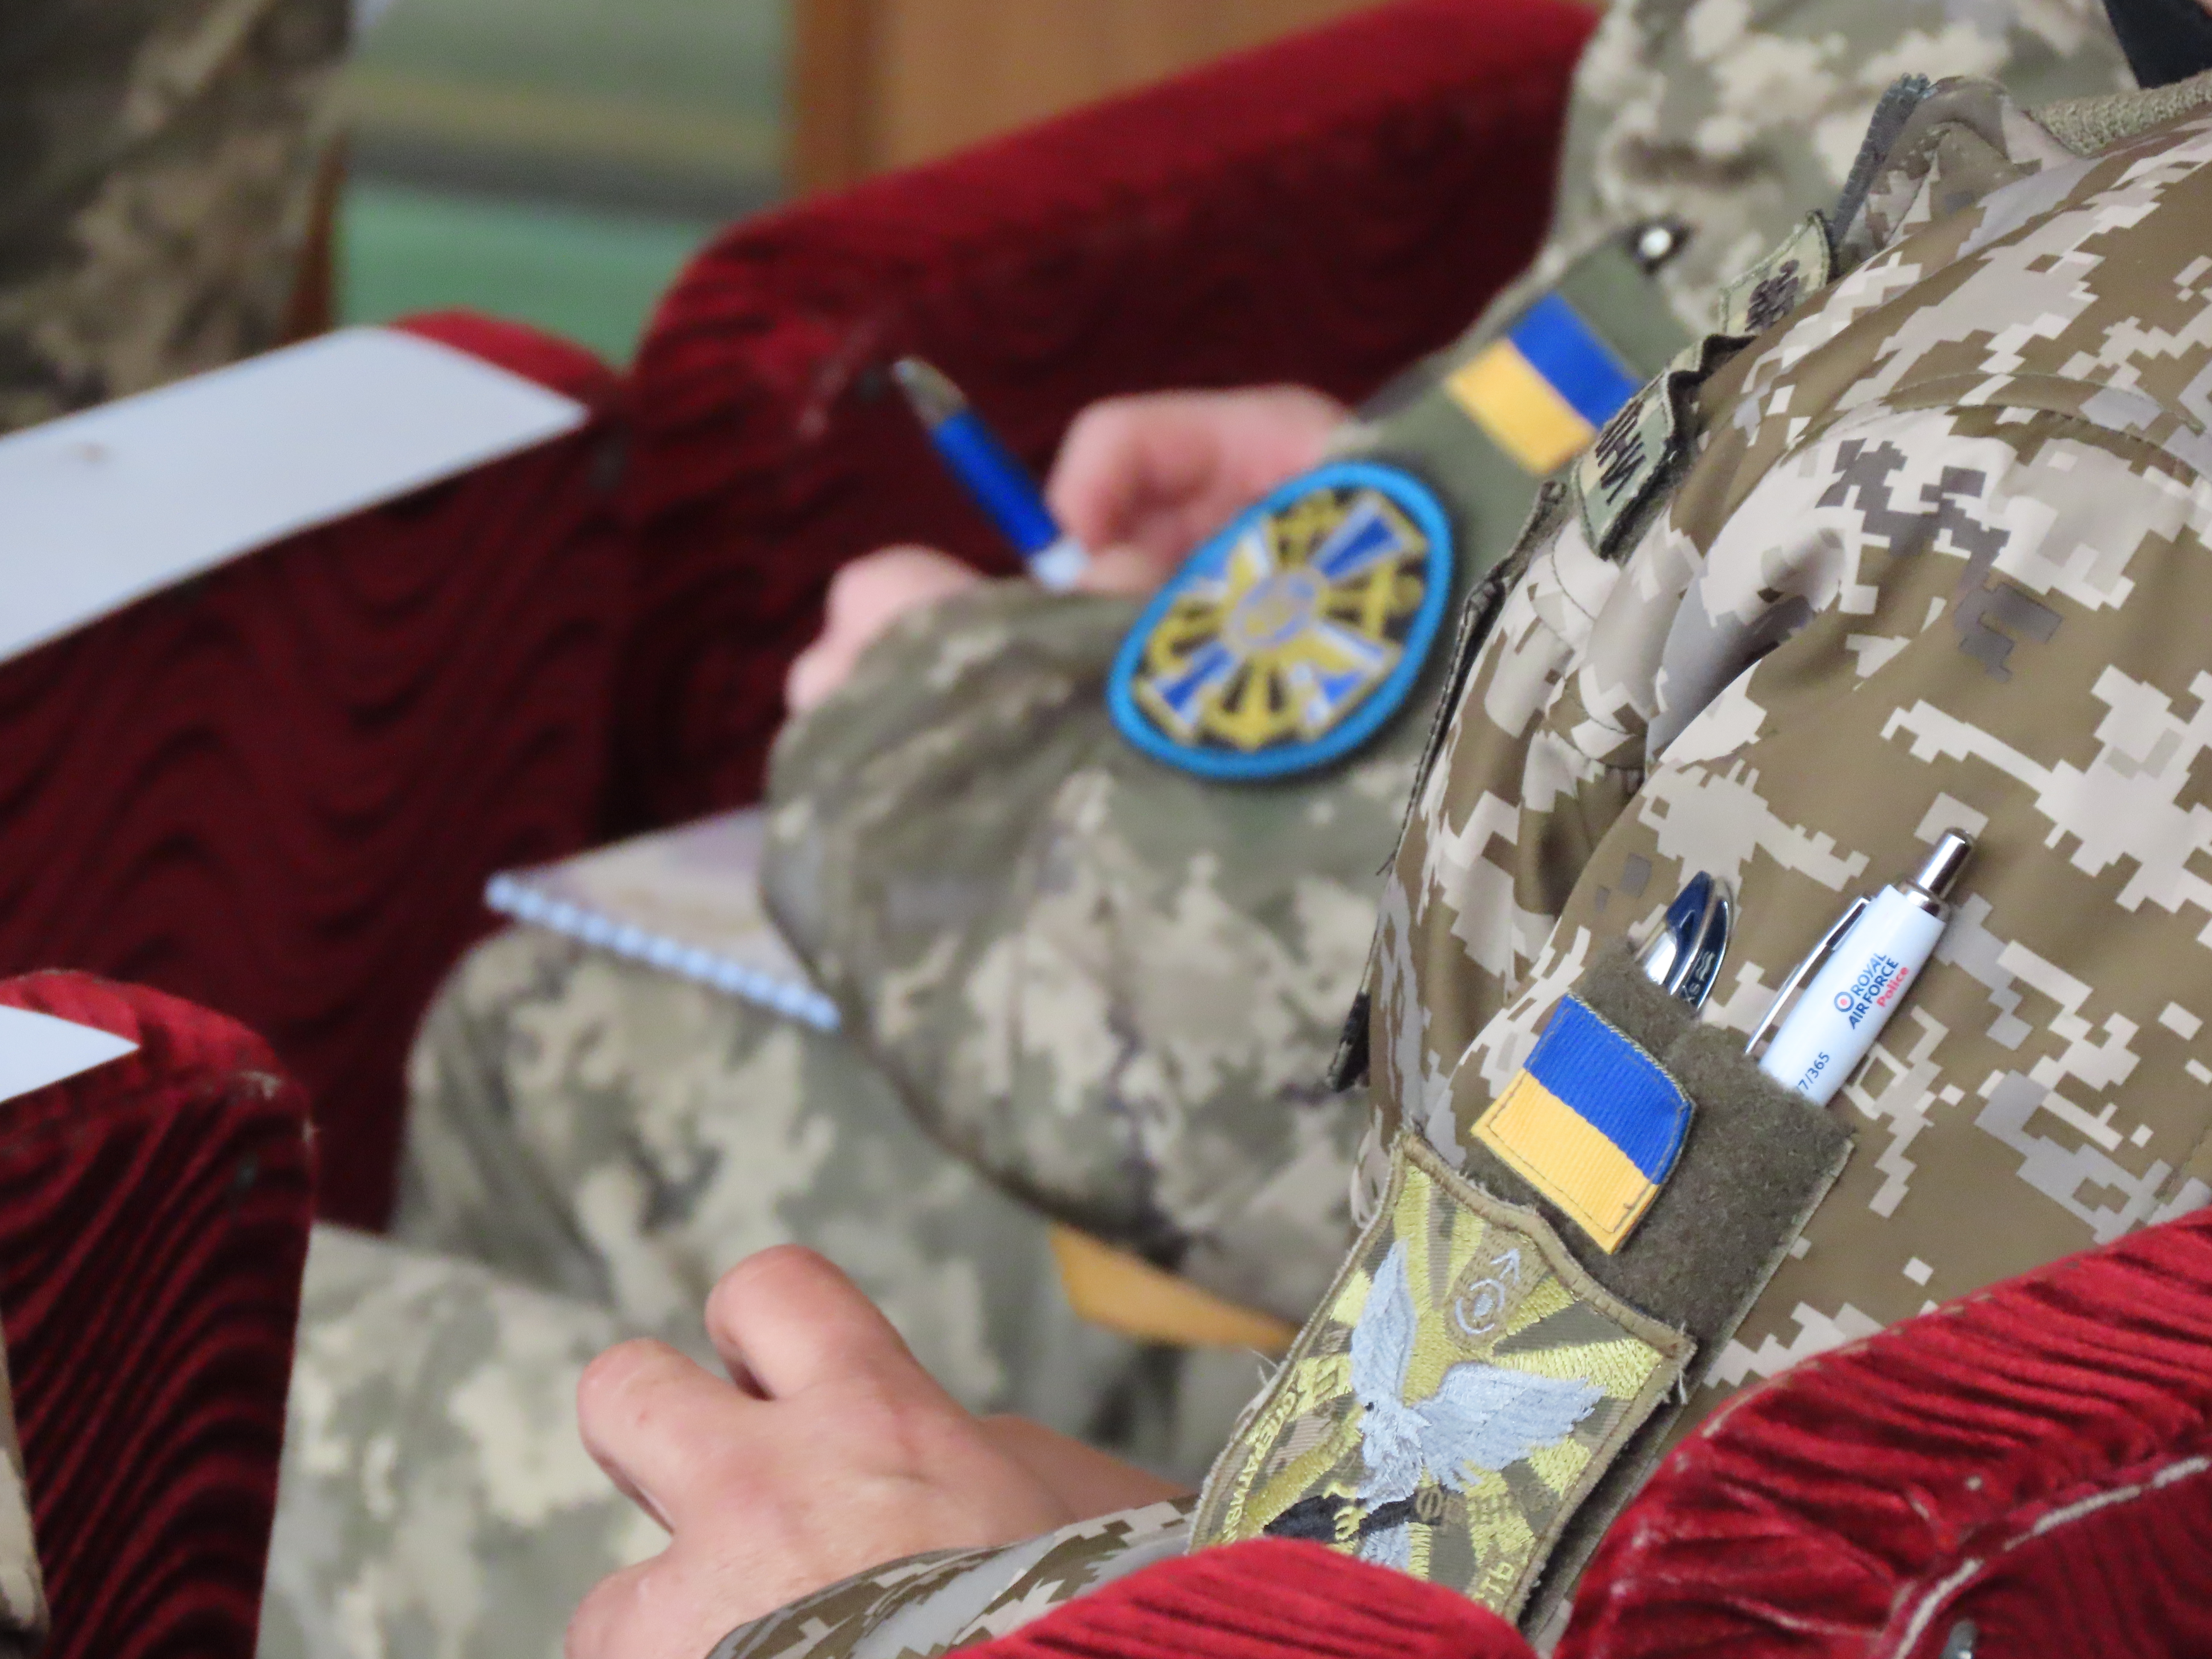 Ukrainian Air Force personnel uniform and crest.